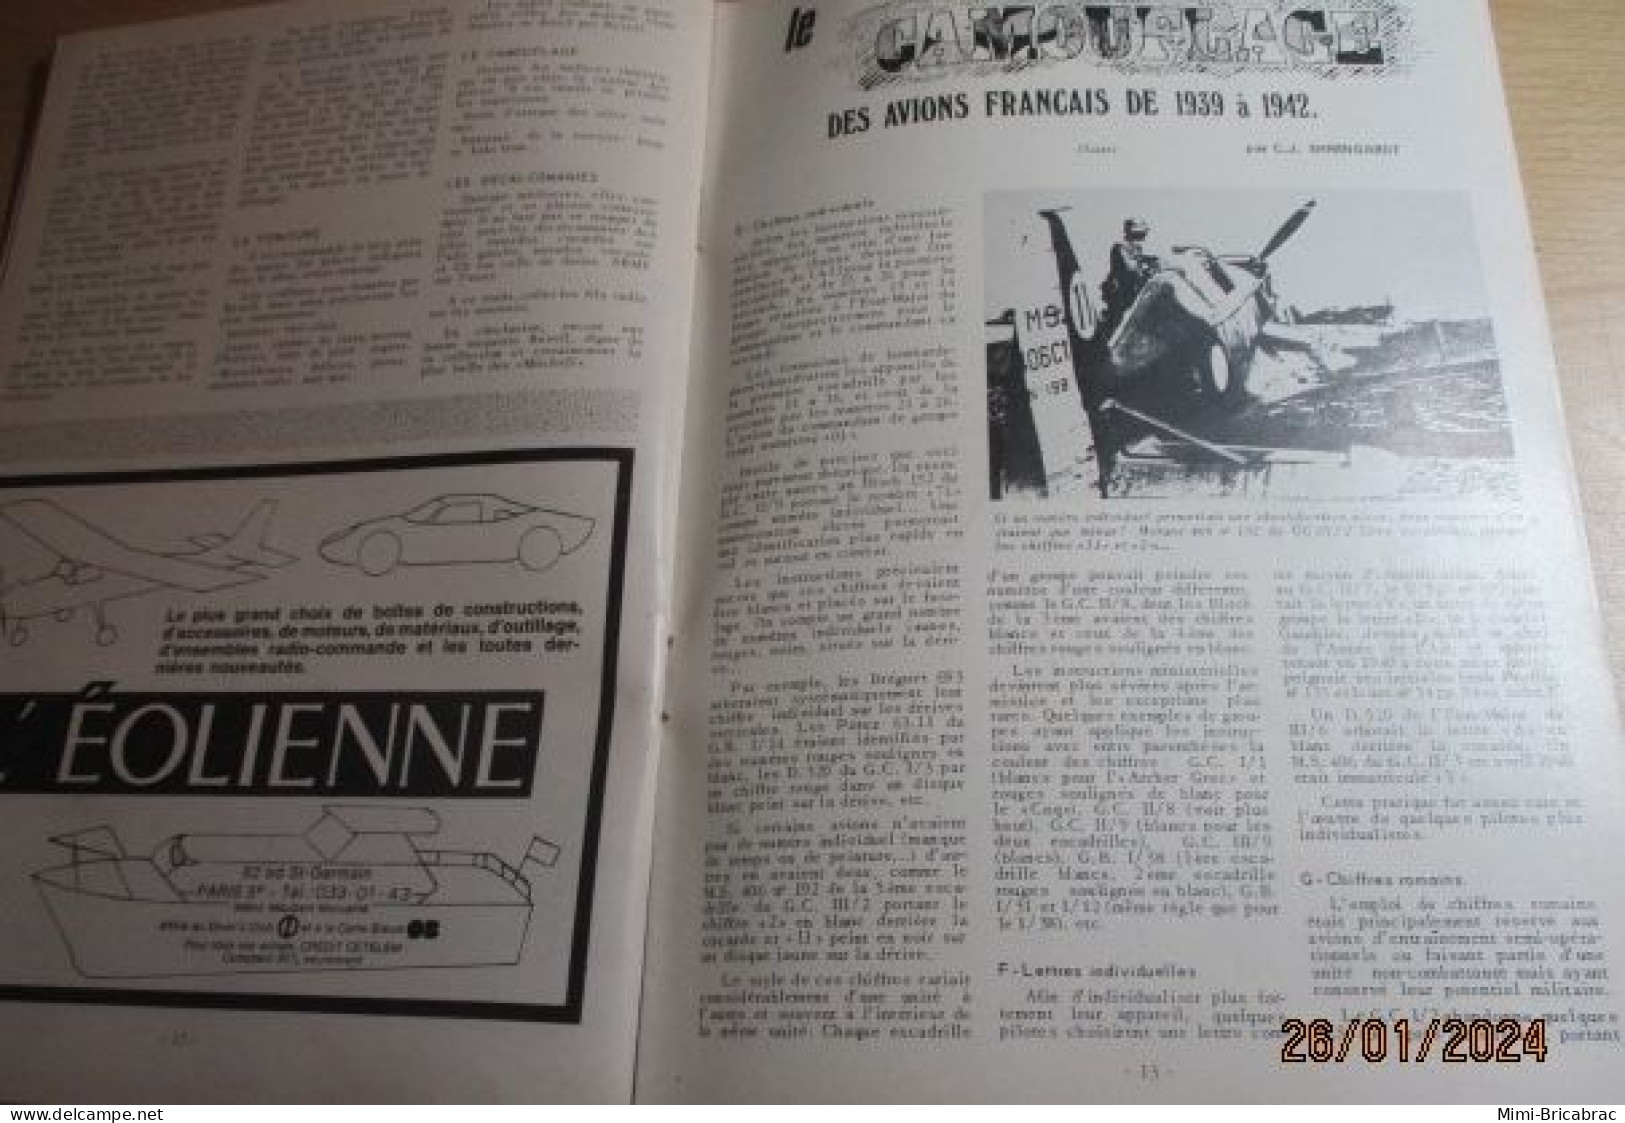 CAGI 1e Revue de maquettisme plastique années 60/70 : MPM n°27 de 1973 très bon état ! Sommaire en photo 2 ou 3